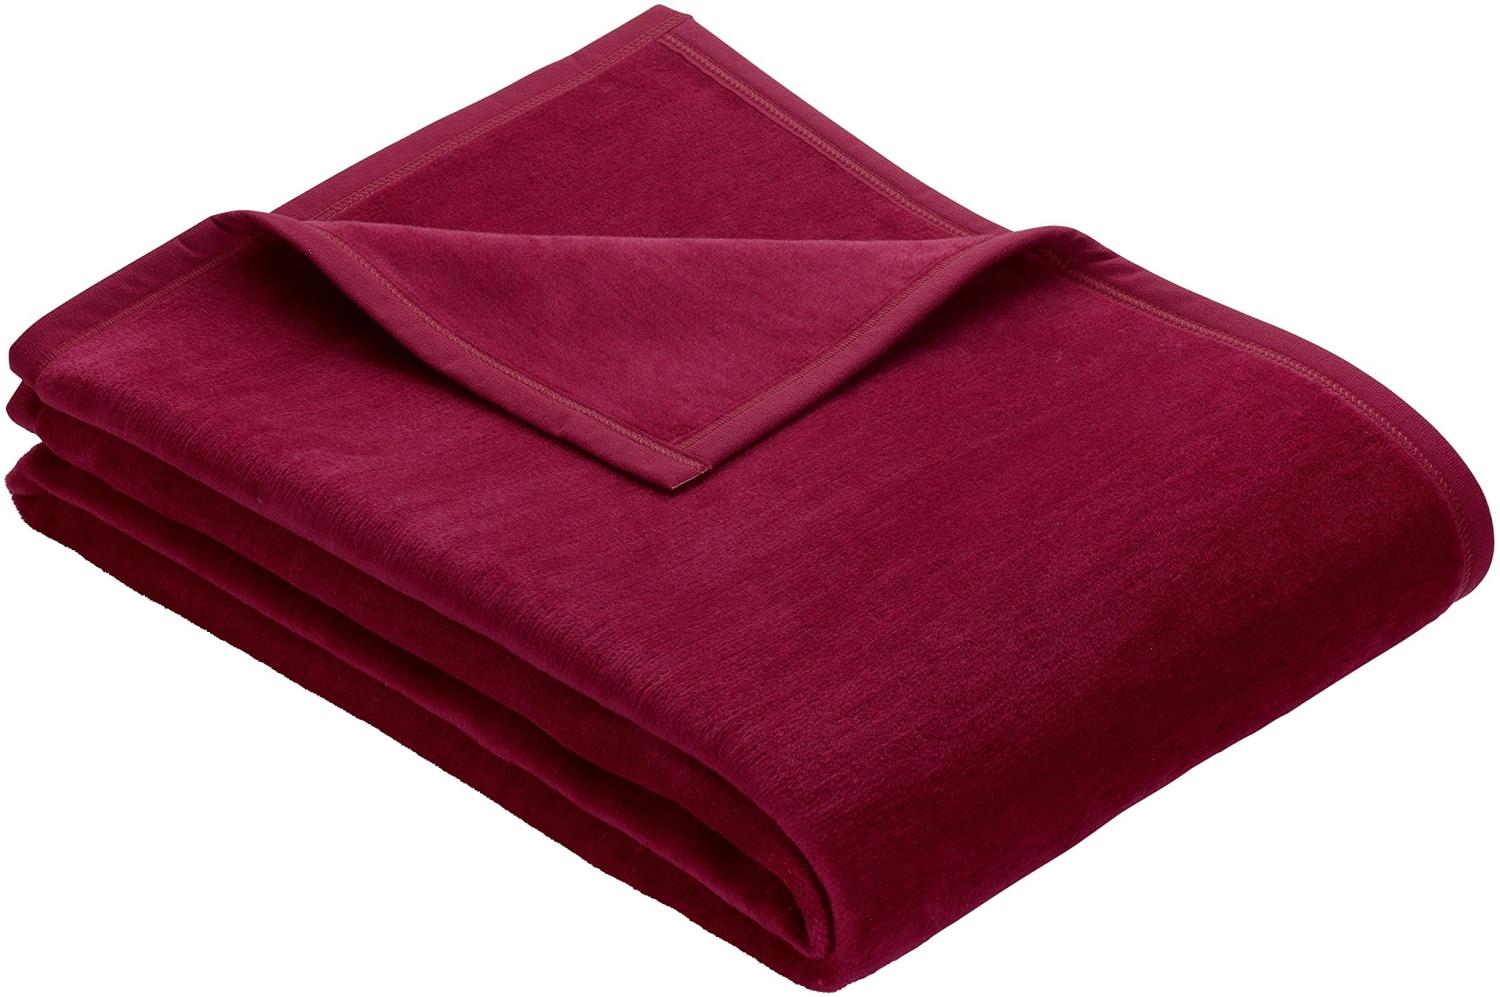 Ibena Porto XXL Decke 180x220 cm – Baumwollmischung weich, warm & waschbar, Tagesdecke rot einfarbig Bild 1